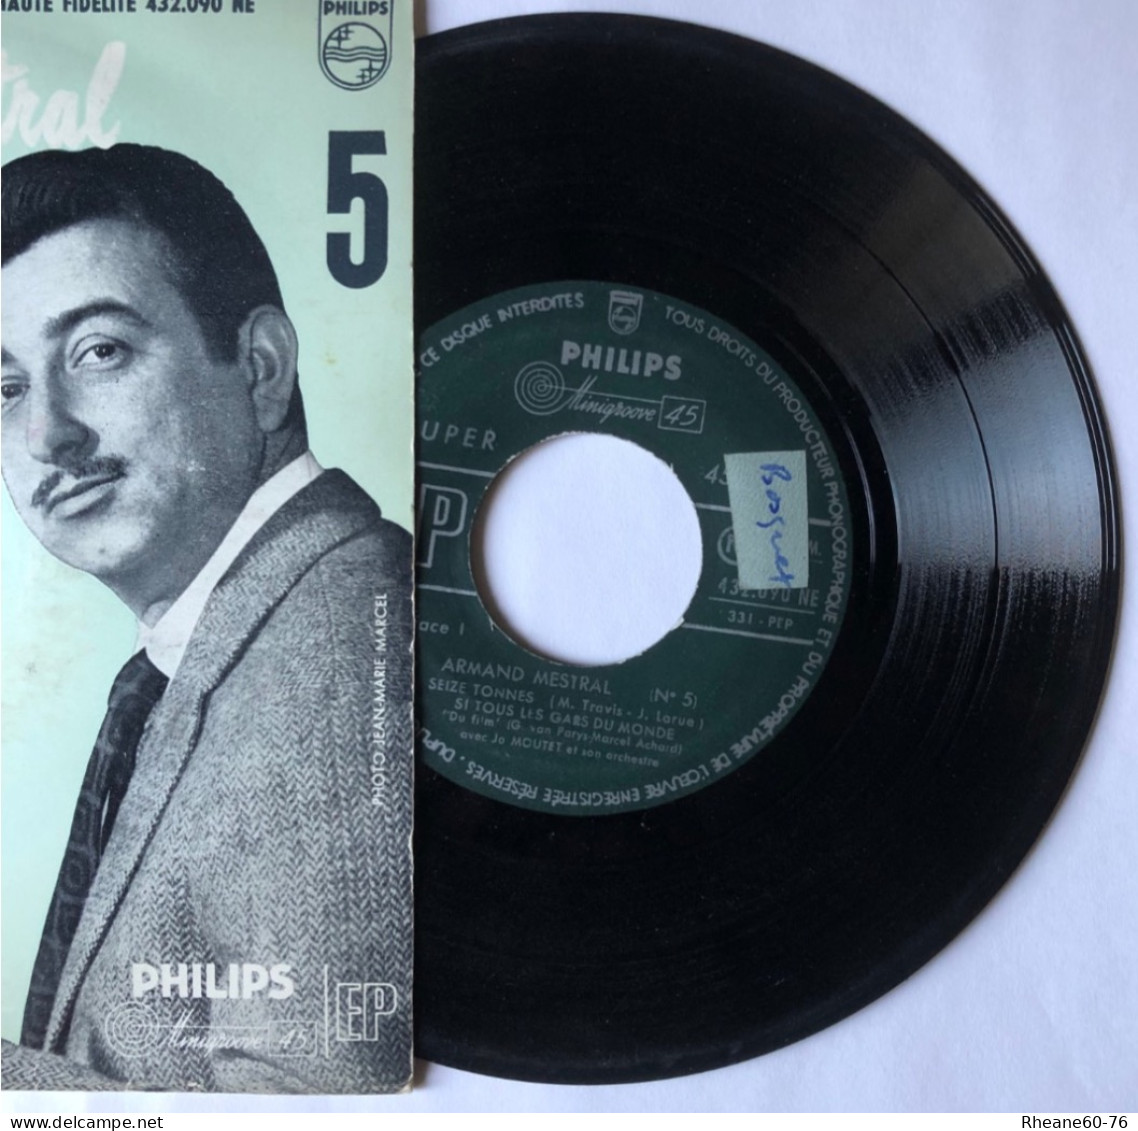 Philips 432.090 NE - 45T EP - Armand Mestral Avec Jo Moutet Et Son Orchestre - Microsillon Médium Haute Fidélité - Speciale Formaten